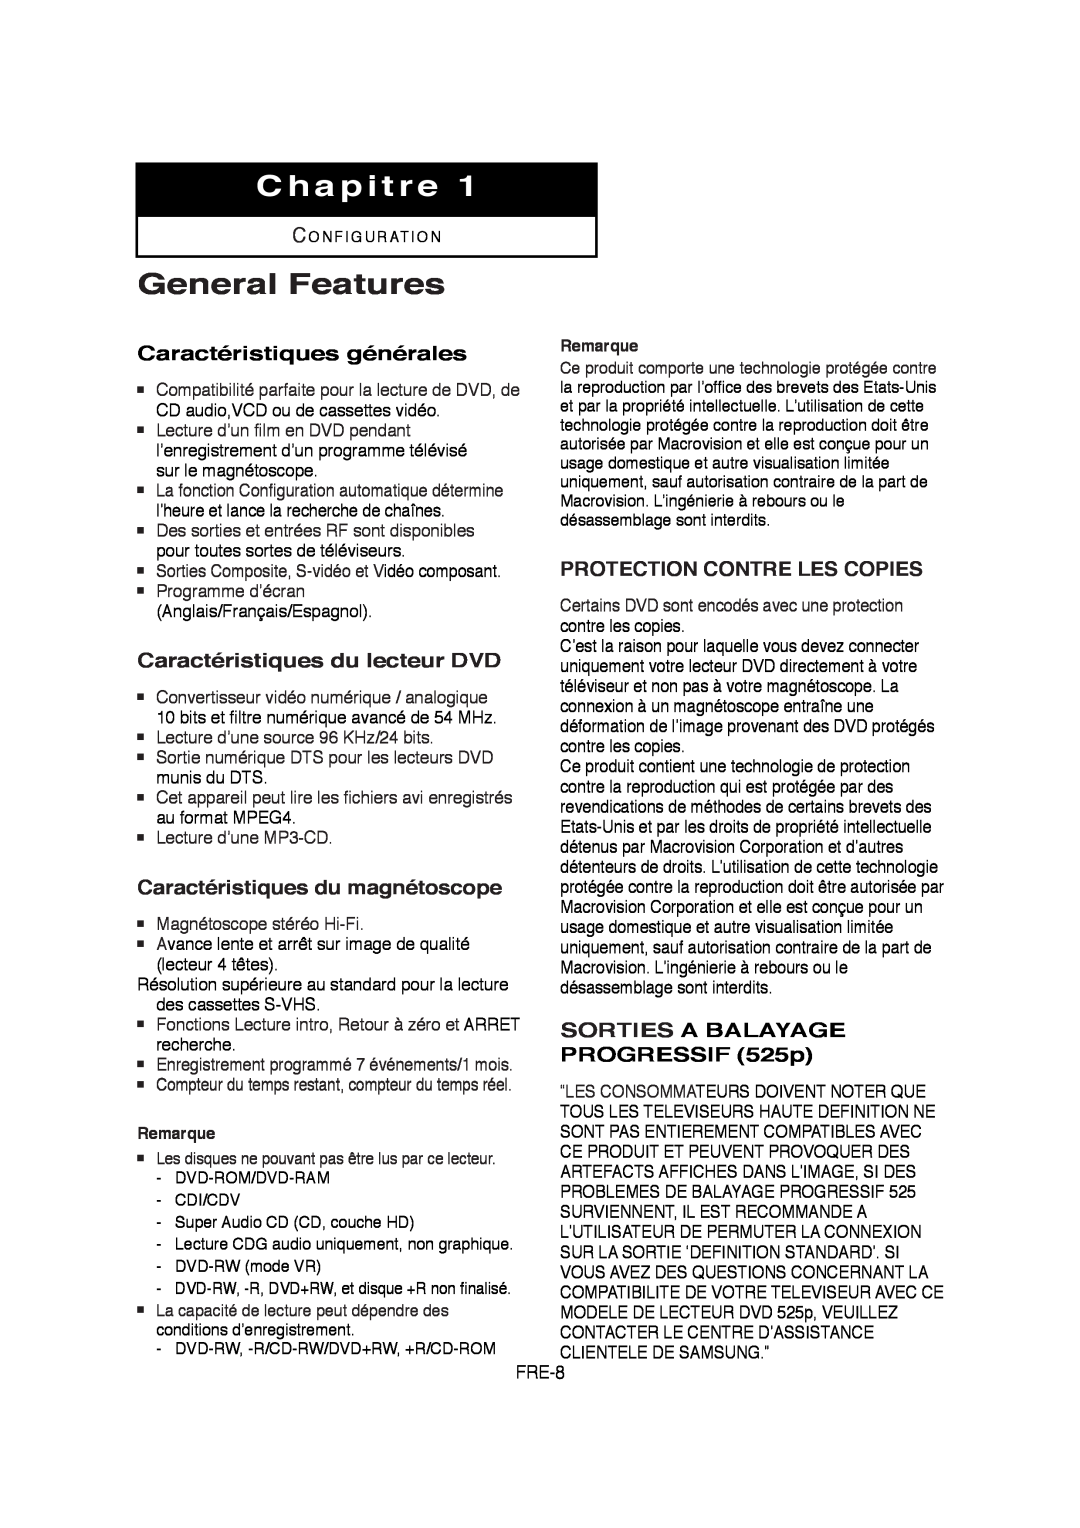 Samsung V6700-XAC Chapitre, Caractéristiques générales, Caractéristiques du lecteur DVD, Caractéristiques du magnétoscope 